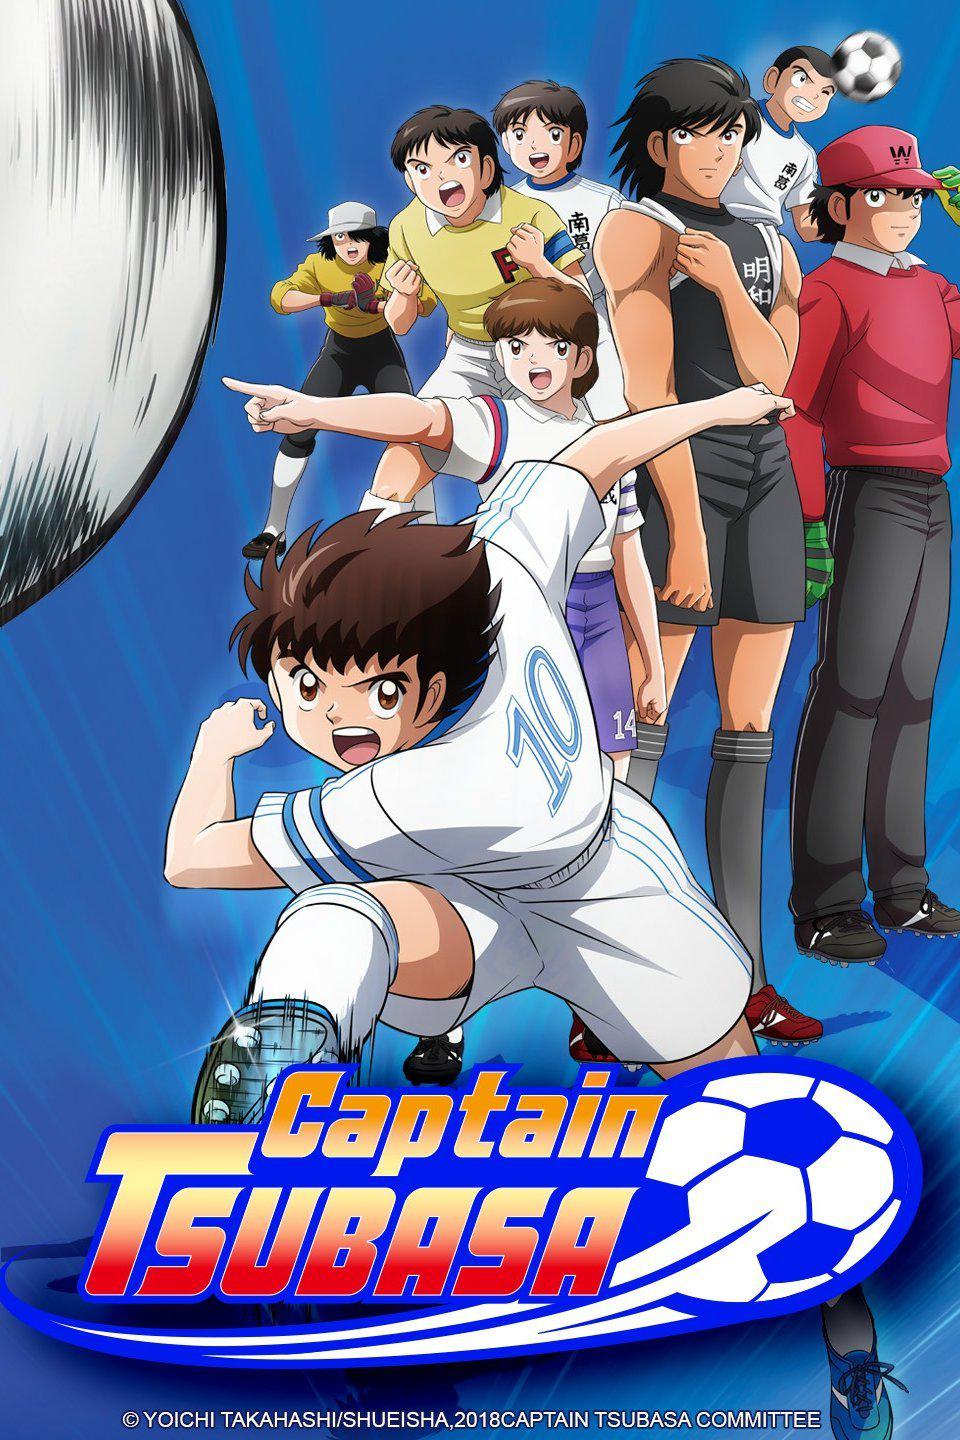 TV ratings for Captain Tsubasa (キャプテン翼) in South Korea. TV Tokyo TV series